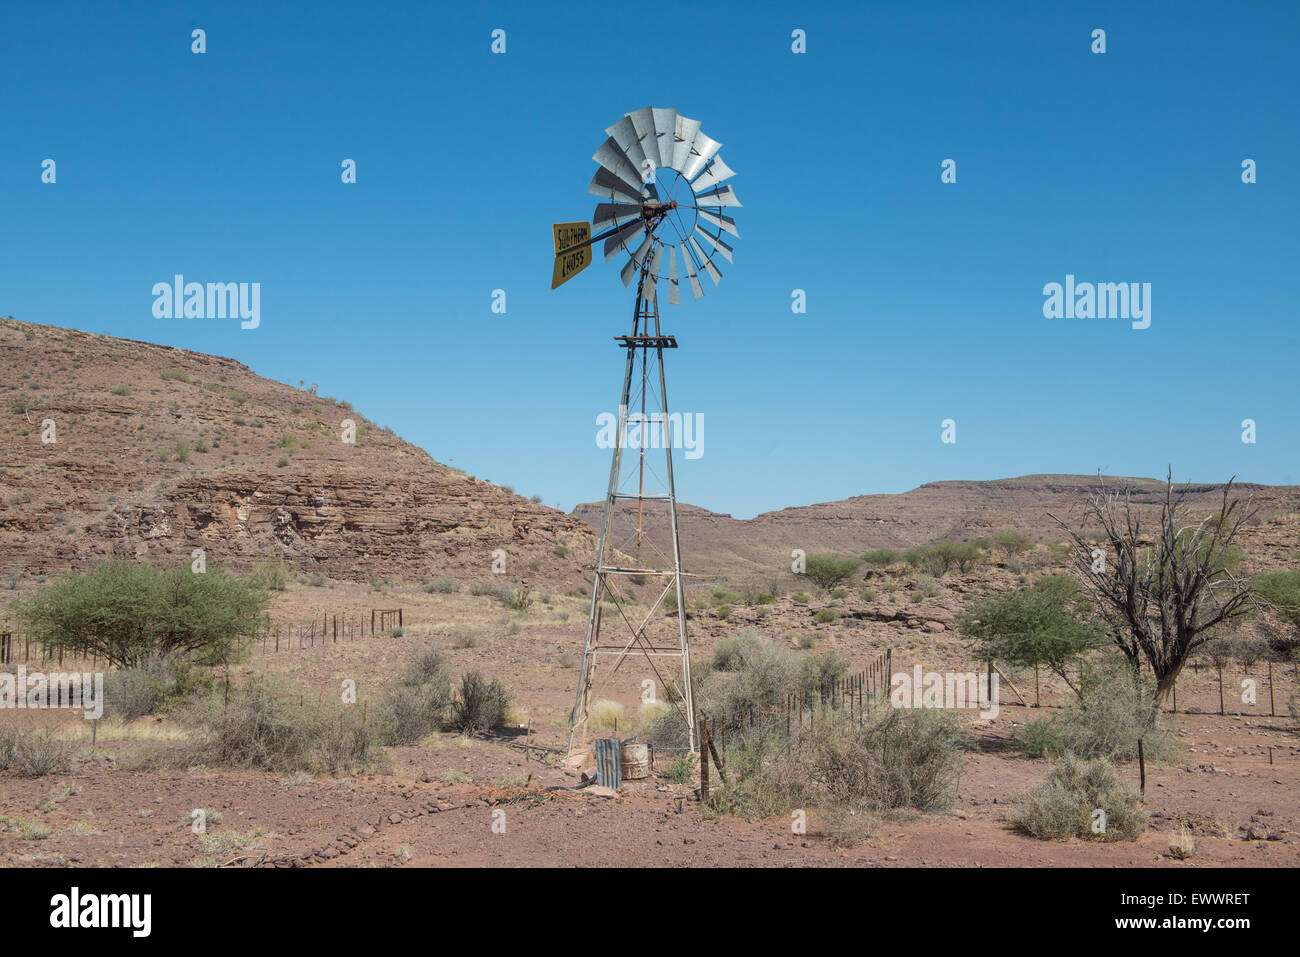 La Namibie, l'Afrique - Moulin avec ciel bleu clair derrière elle Banque D'Images